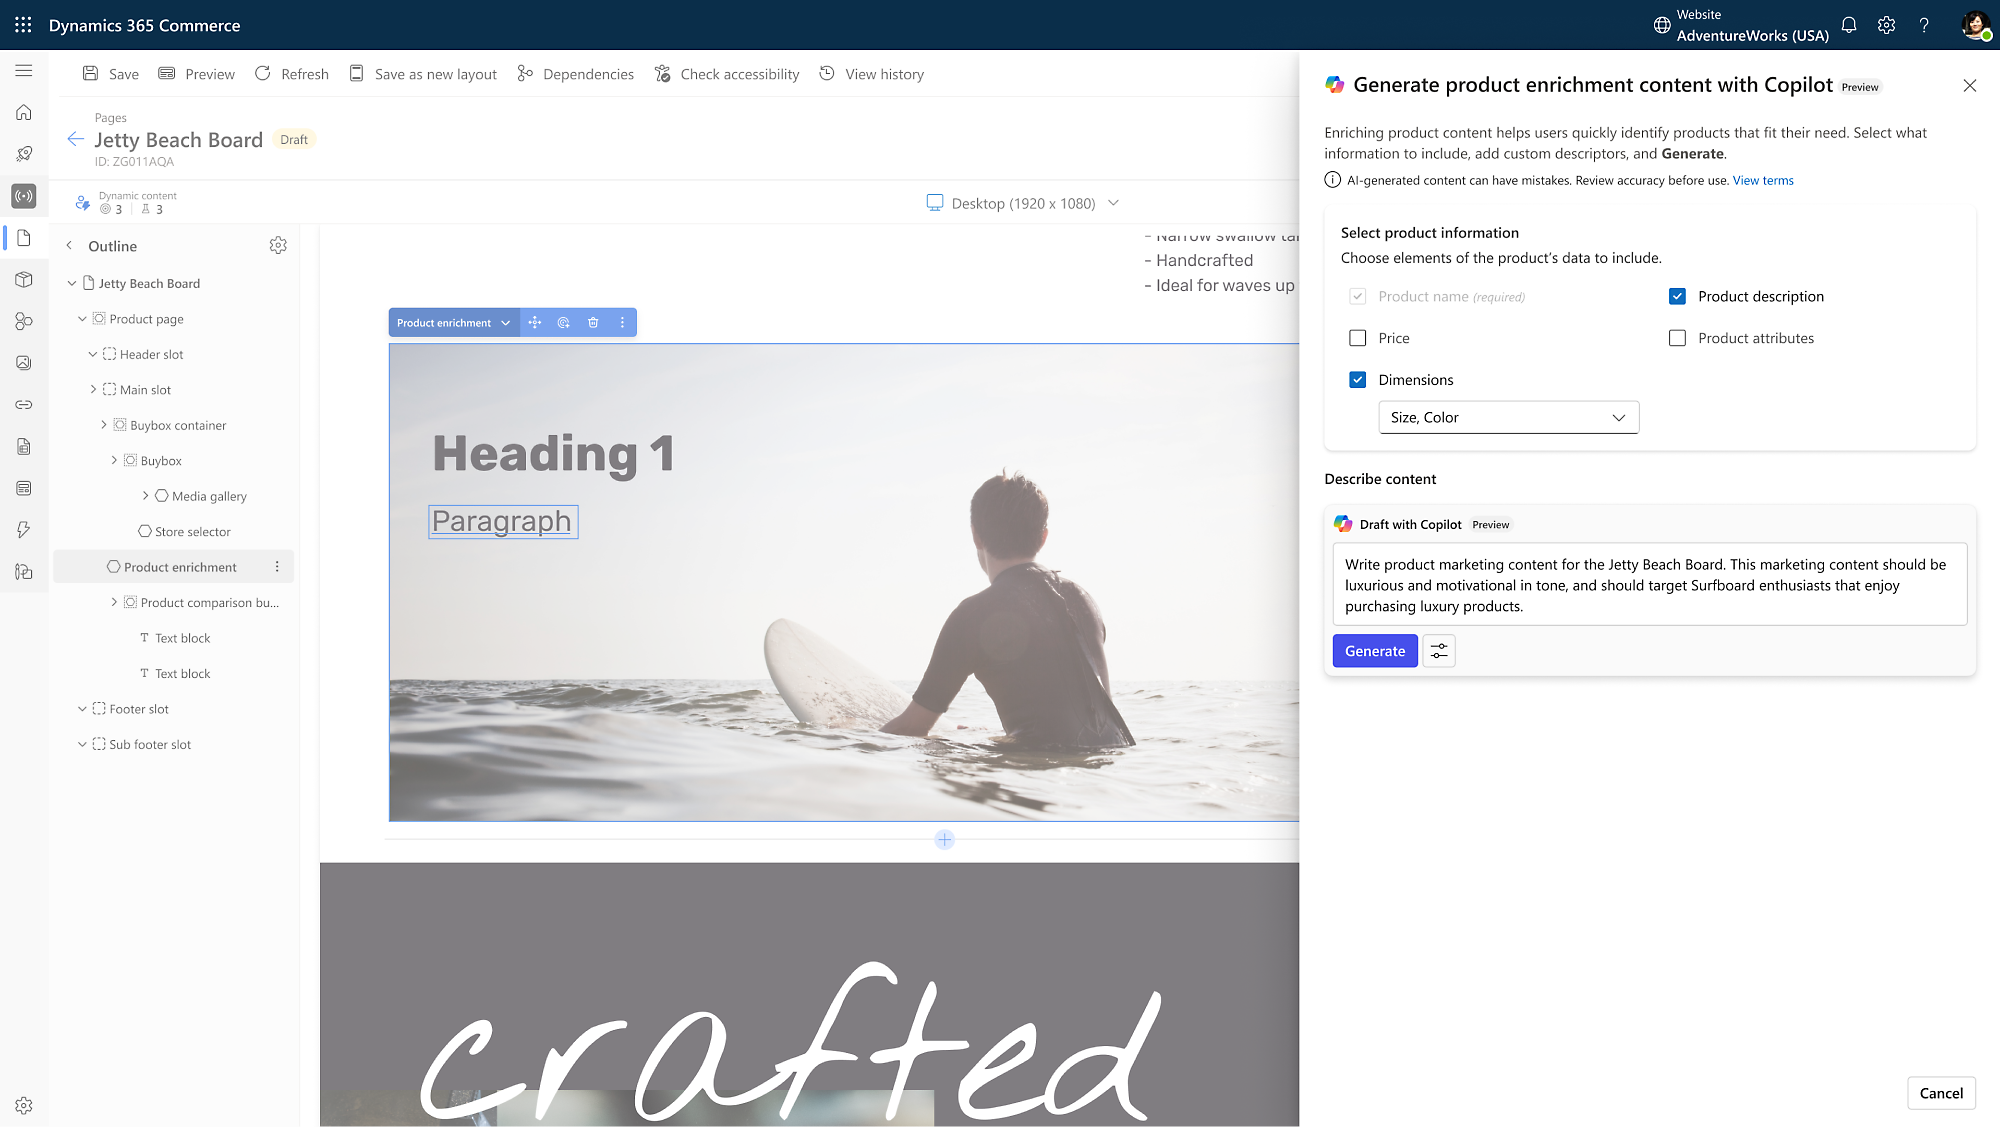 Recorte de pantalla de la interfaz de Dynamics 365 Commerce con opciones para el enriquecimiento de productos y la generación de contenido de marketing para tablas de surf de Jetty Beach Board.